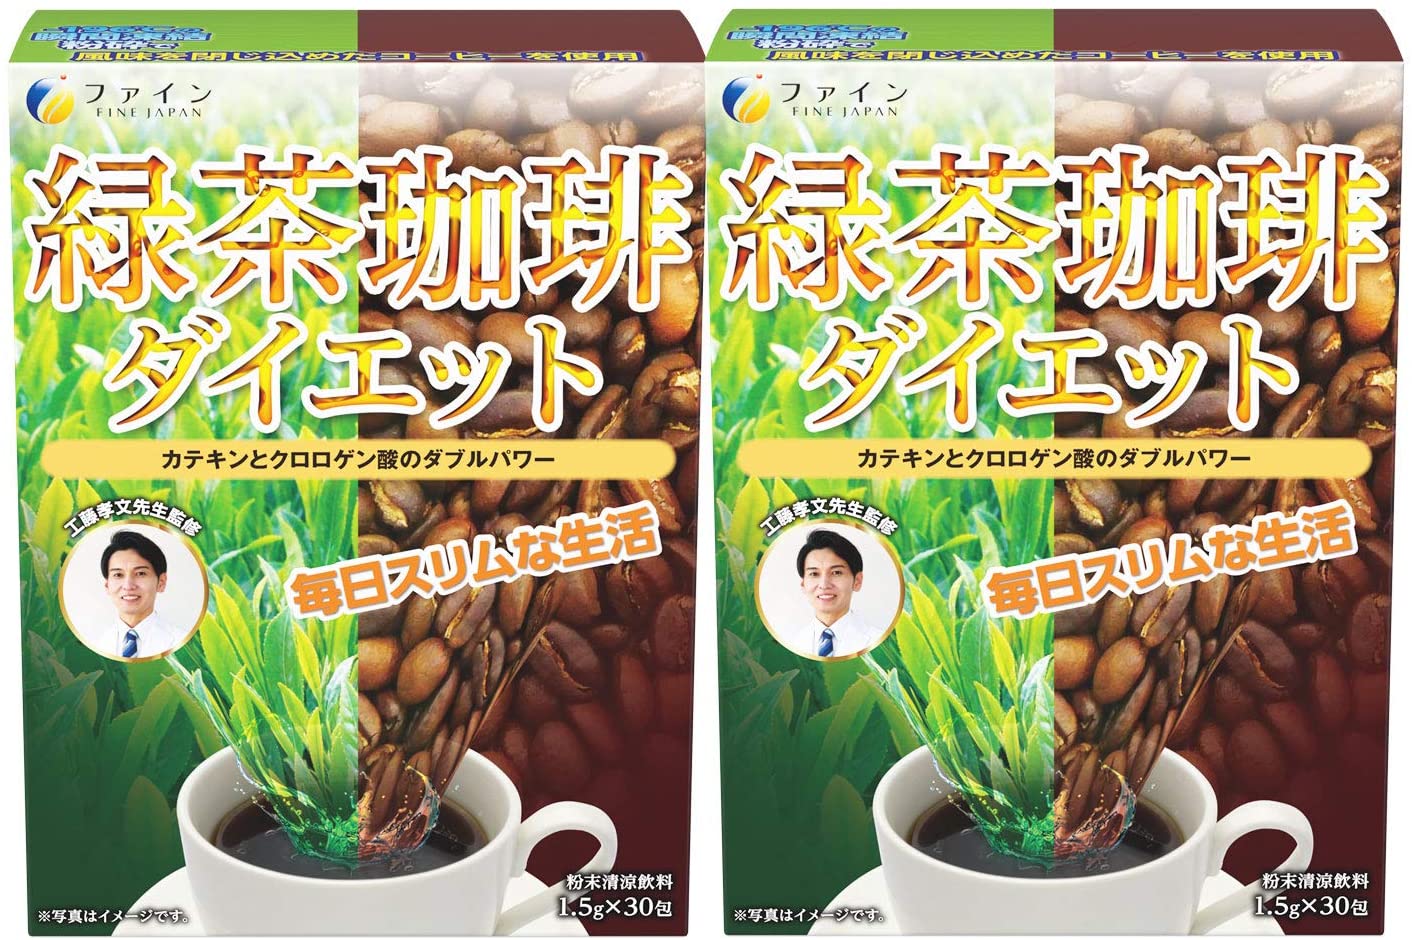 ファイン 緑茶コーヒー ダイエット 工藤孝文先生監修 カテキン クロロゲン酸 緑茶 コーヒー 粉末 粉 配合 国内生産 (30包入)×10個セット